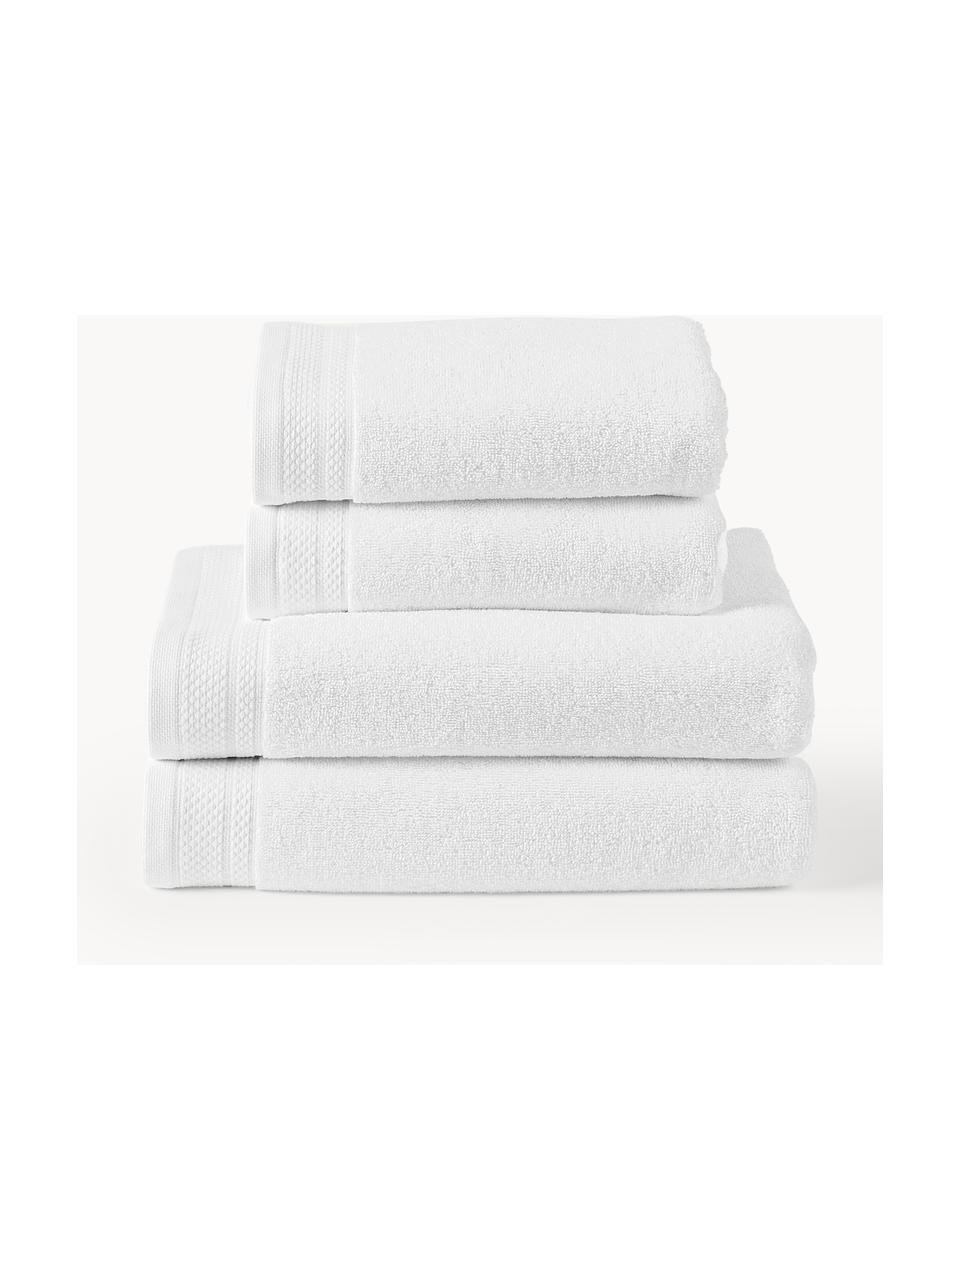 Sada ručníků z organické bavlny Premium, různé velikosti sady, 100 % bio bavlna, s certifikátem GOTS (certifikováno GCL International, GCL-300517)
Vysoká gramáž, 600 g/m², Bílá, 4dílná sada (ručník a osuška)